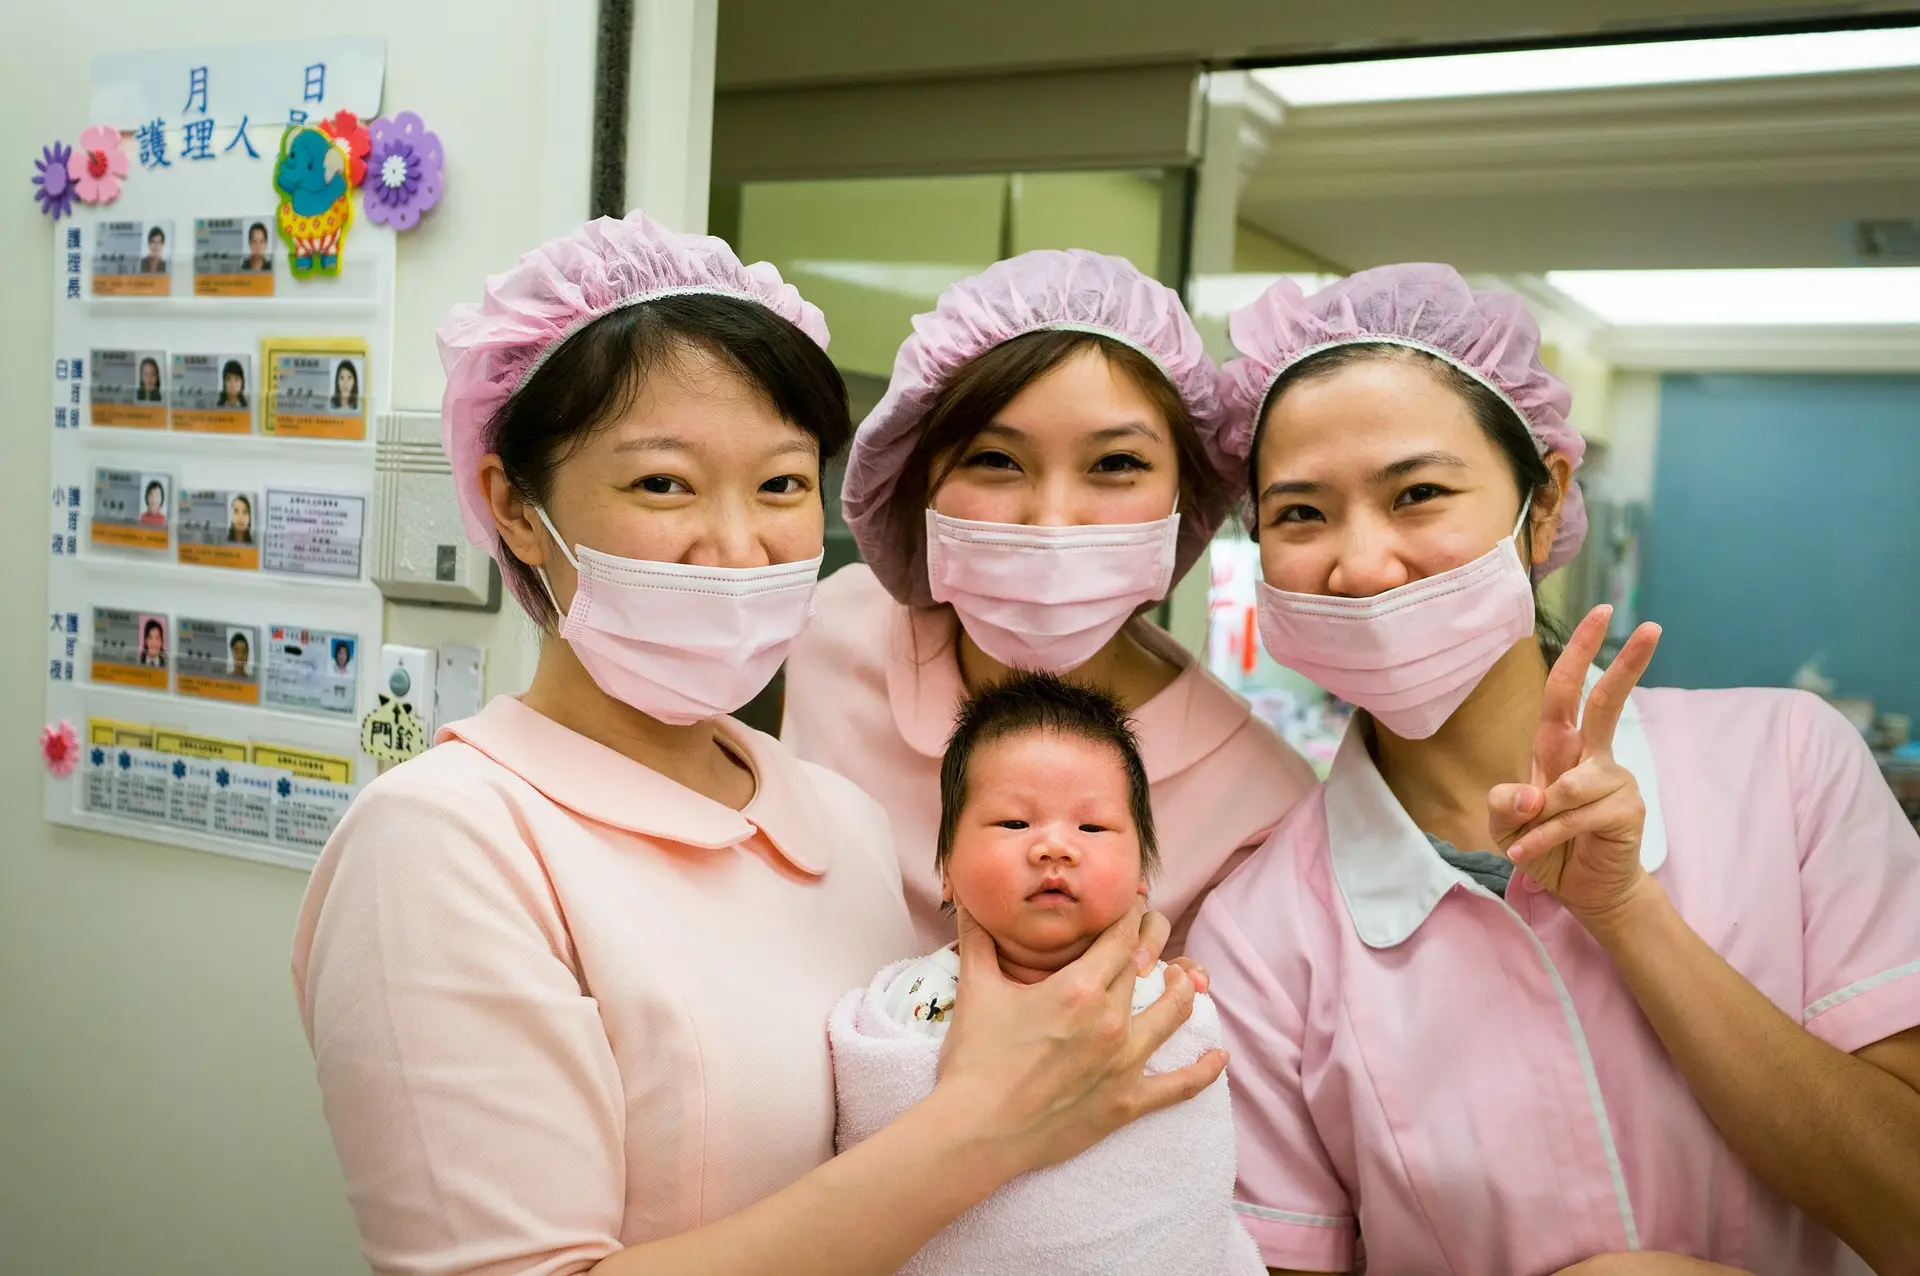 아기를-들고-아기와-함께-사진을-찍고-있는-3명의-간호사